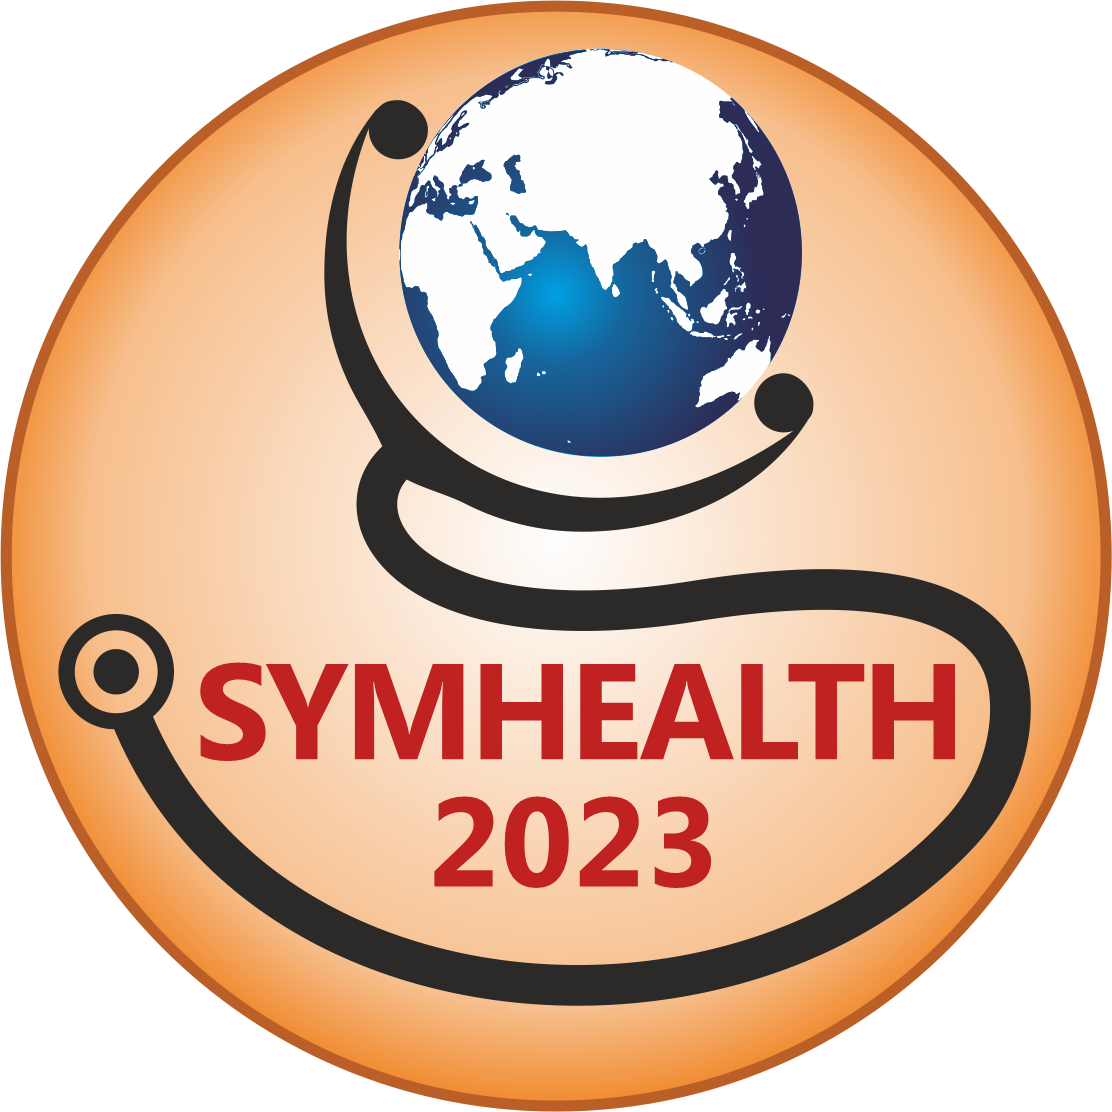 SYMHEALTH 2018
